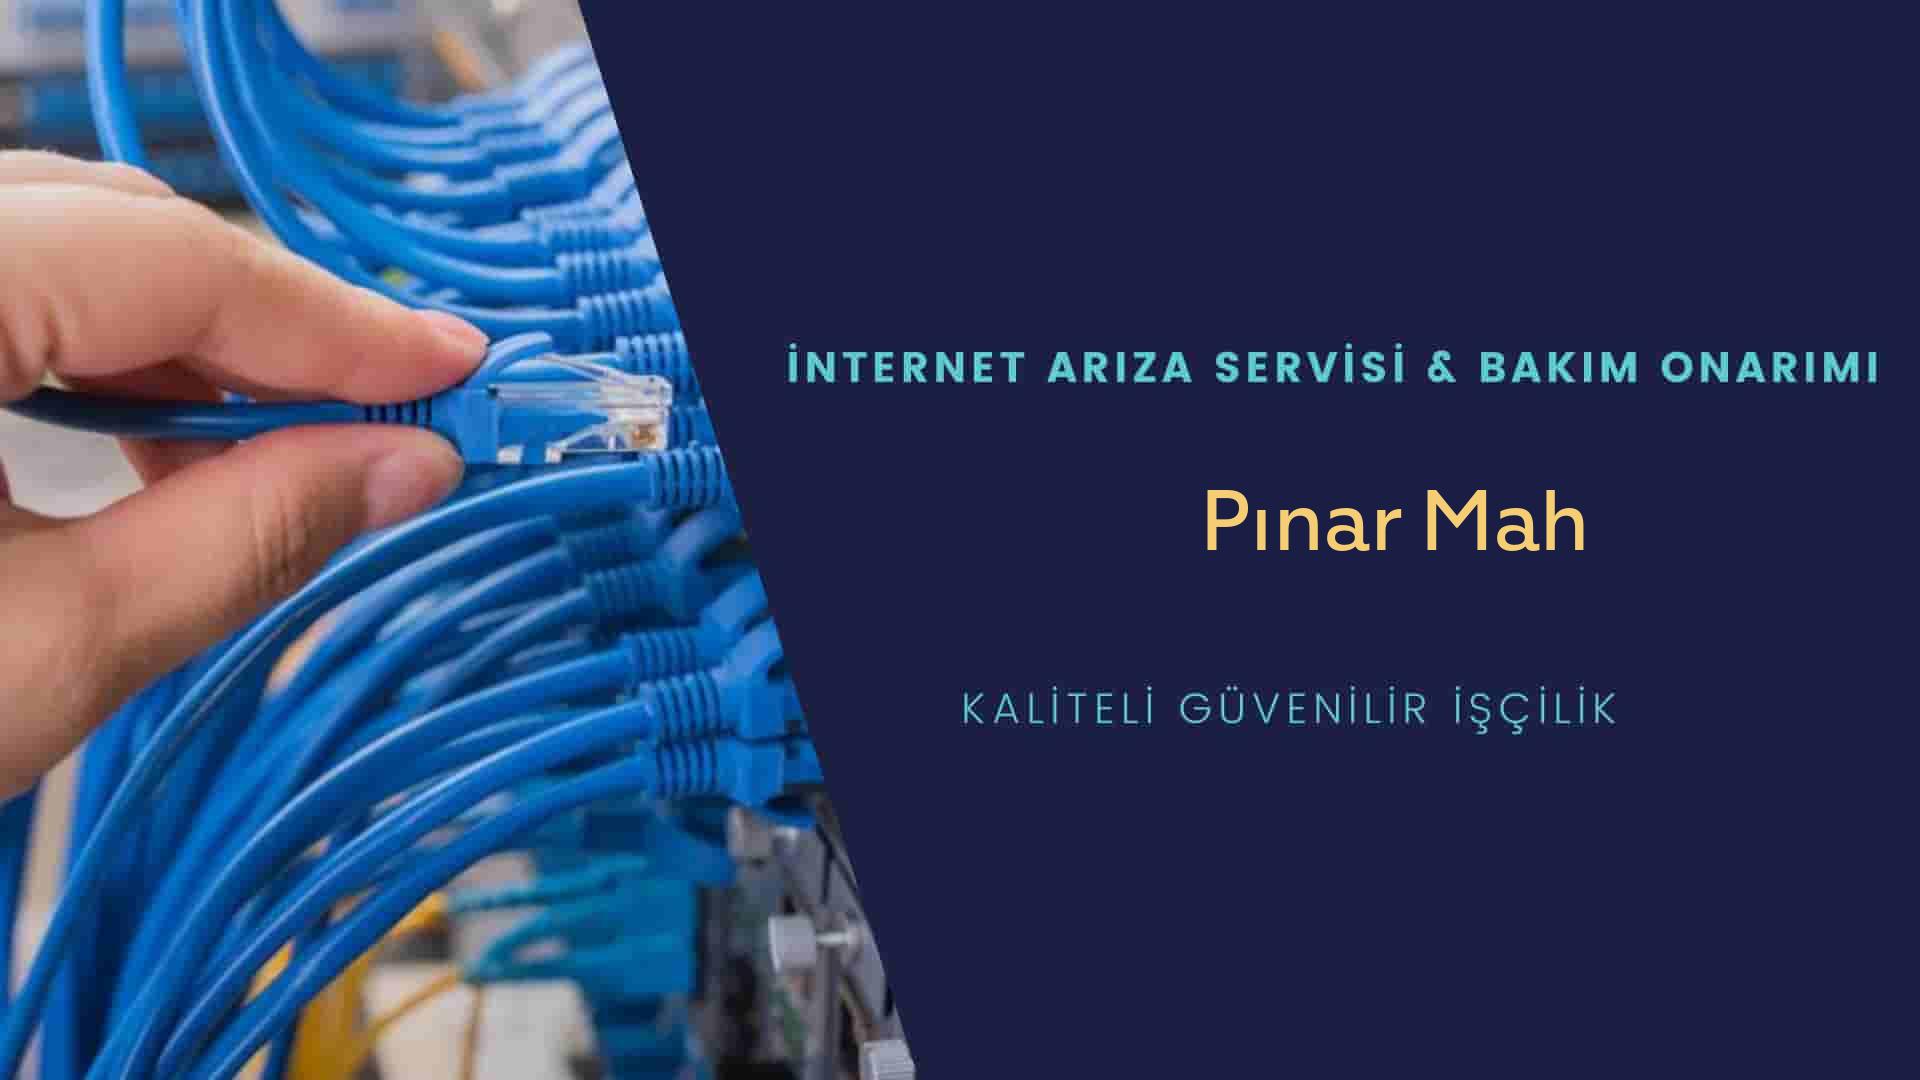 Pınar Mah internet kablosu çekimi yapan yerler veya elektrikçiler mi? arıyorsunuz doğru yerdesiniz o zaman sizlere 7/24 yardımcı olacak profesyonel ustalarımız bir telefon kadar yakındır size.